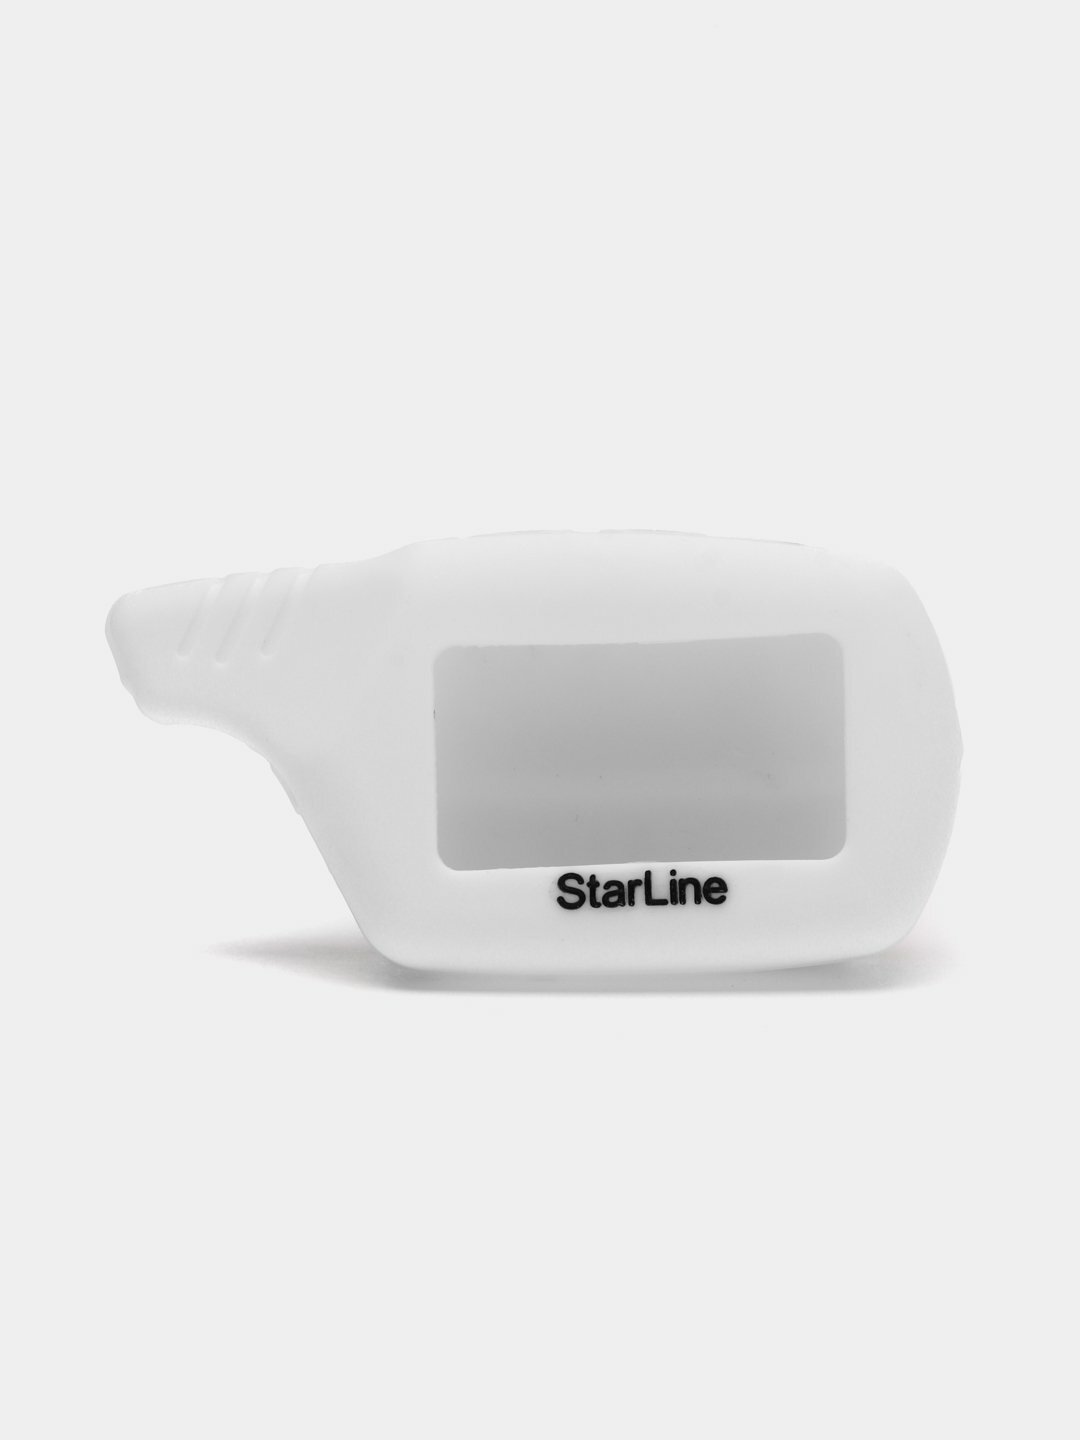 Чехол брелка сигнализации от Starline B9, B6, A91, А61 силиконовый, для корпуса ключа Цвет Белый